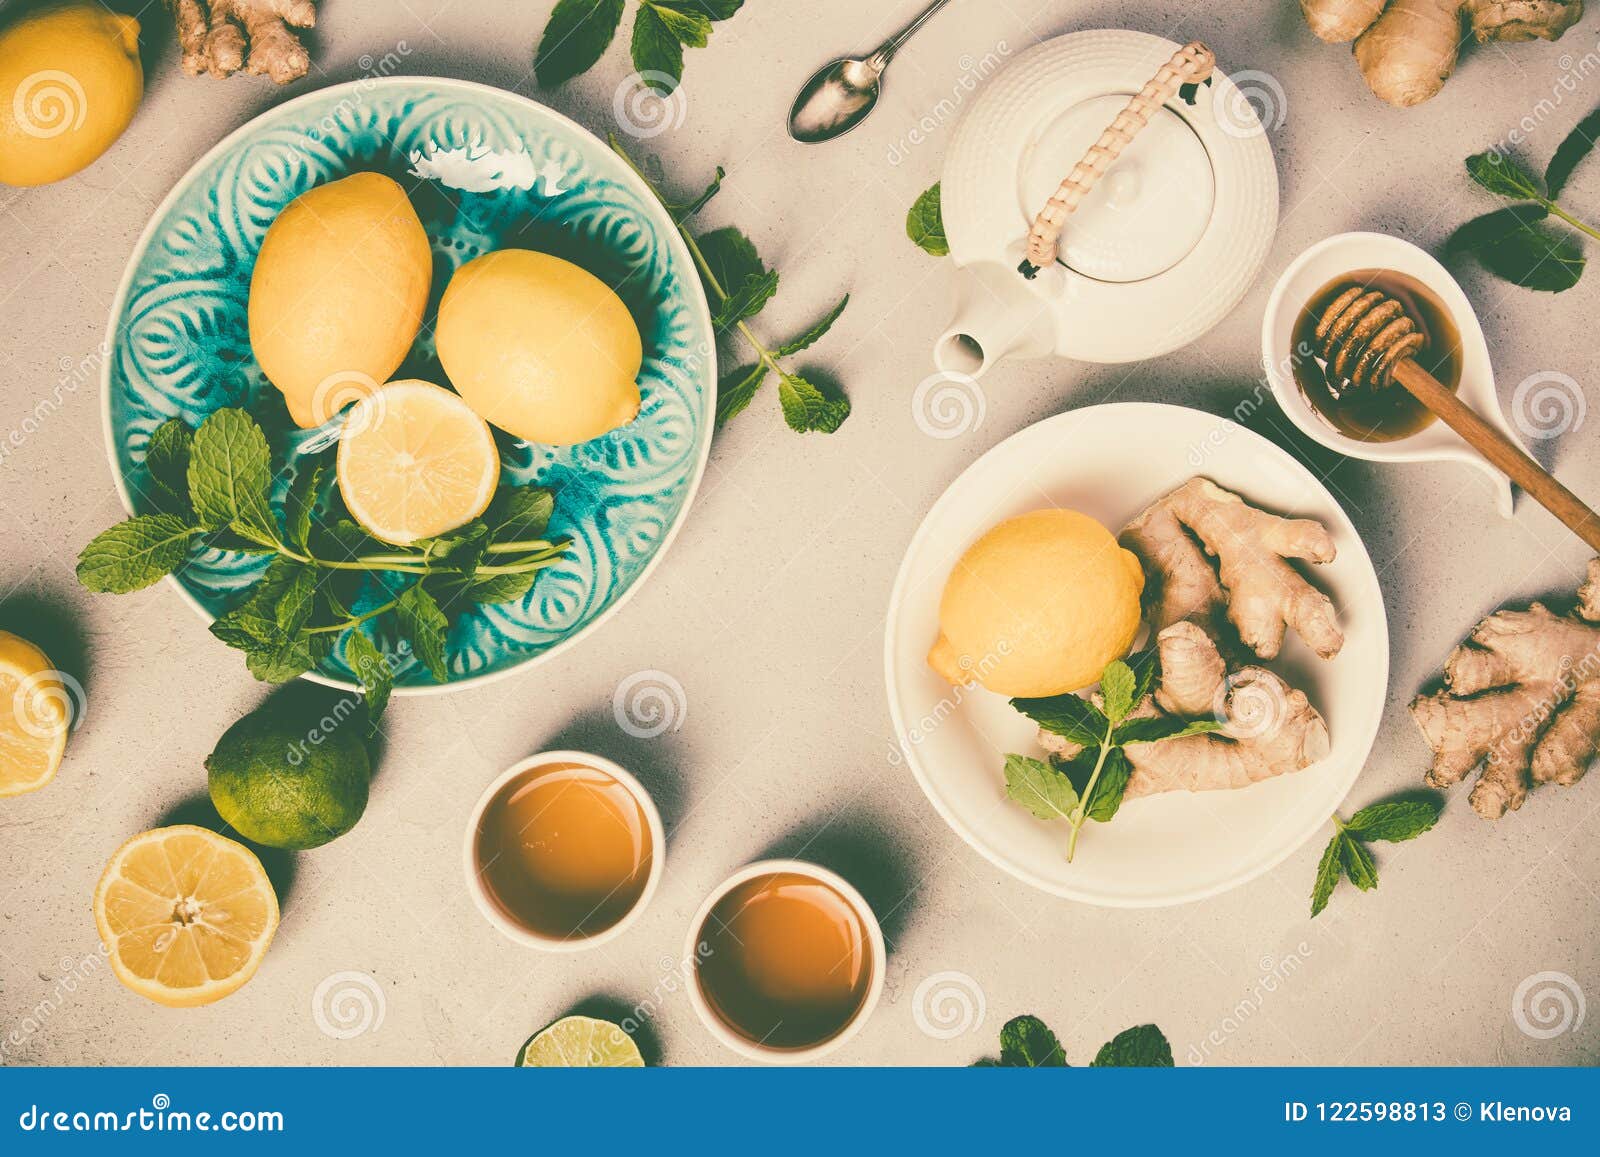 Ingwertee Mit Zitrone, Honig Und Minze Stockbild - Bild von blau ...